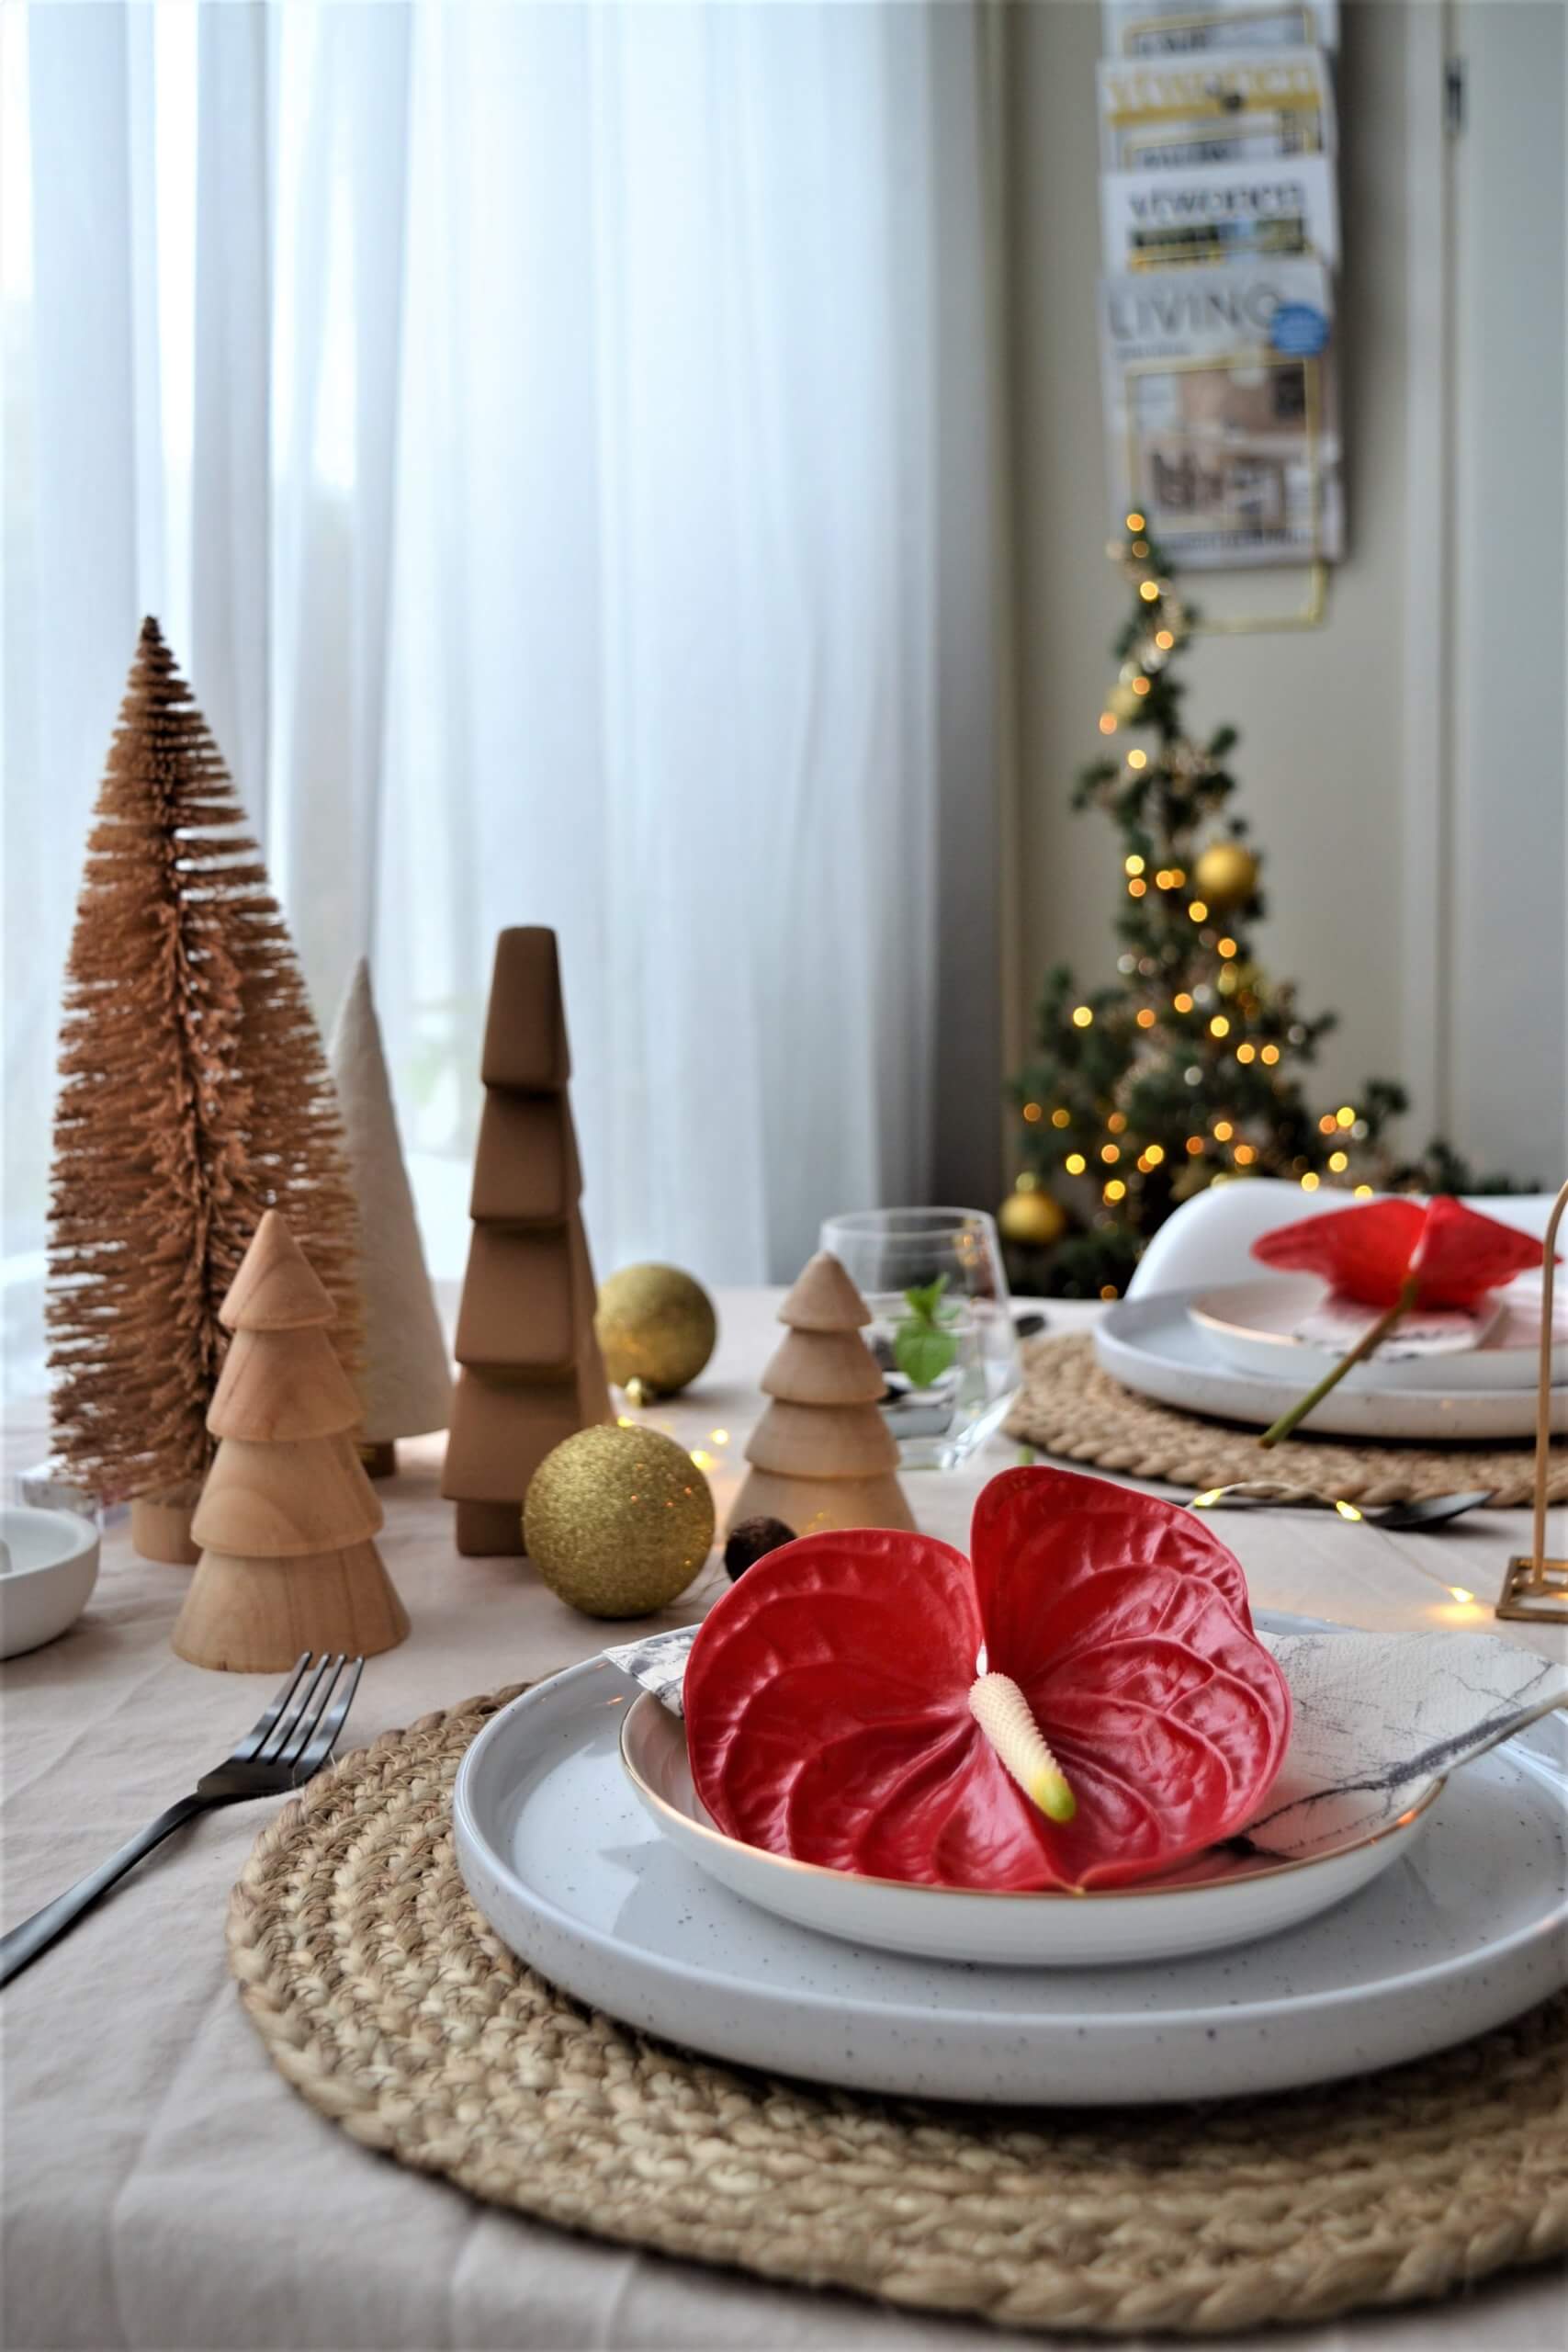 Décoration de la table de Noël avec des anthuriums rouges